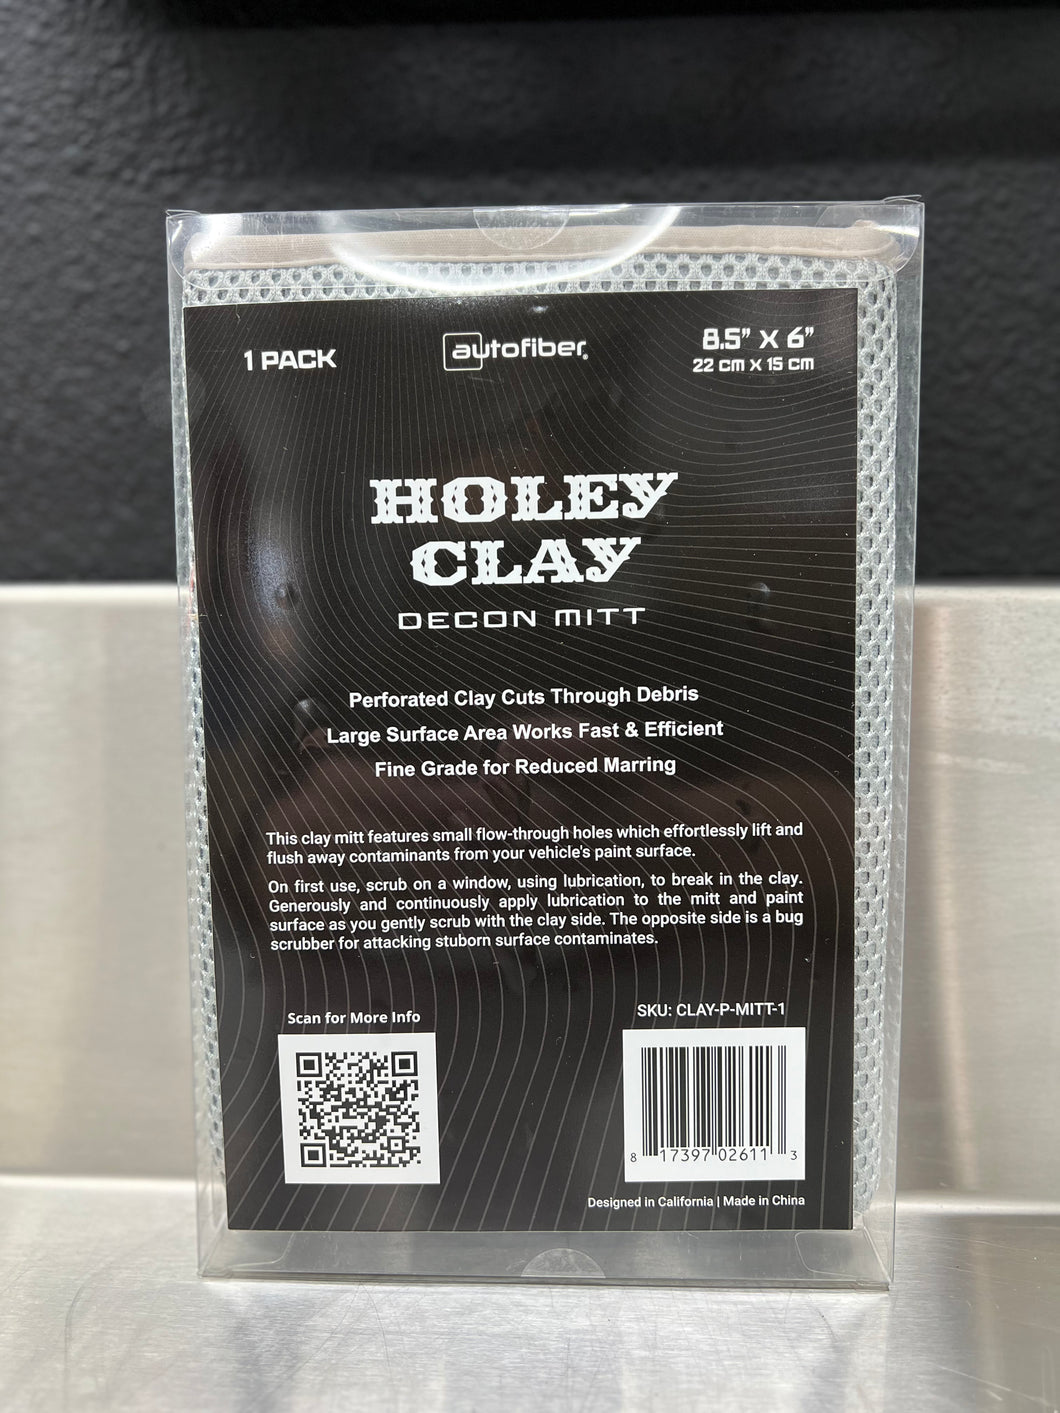 HOLEY CLAY - Synthetic Clay Mitt from Autofiber